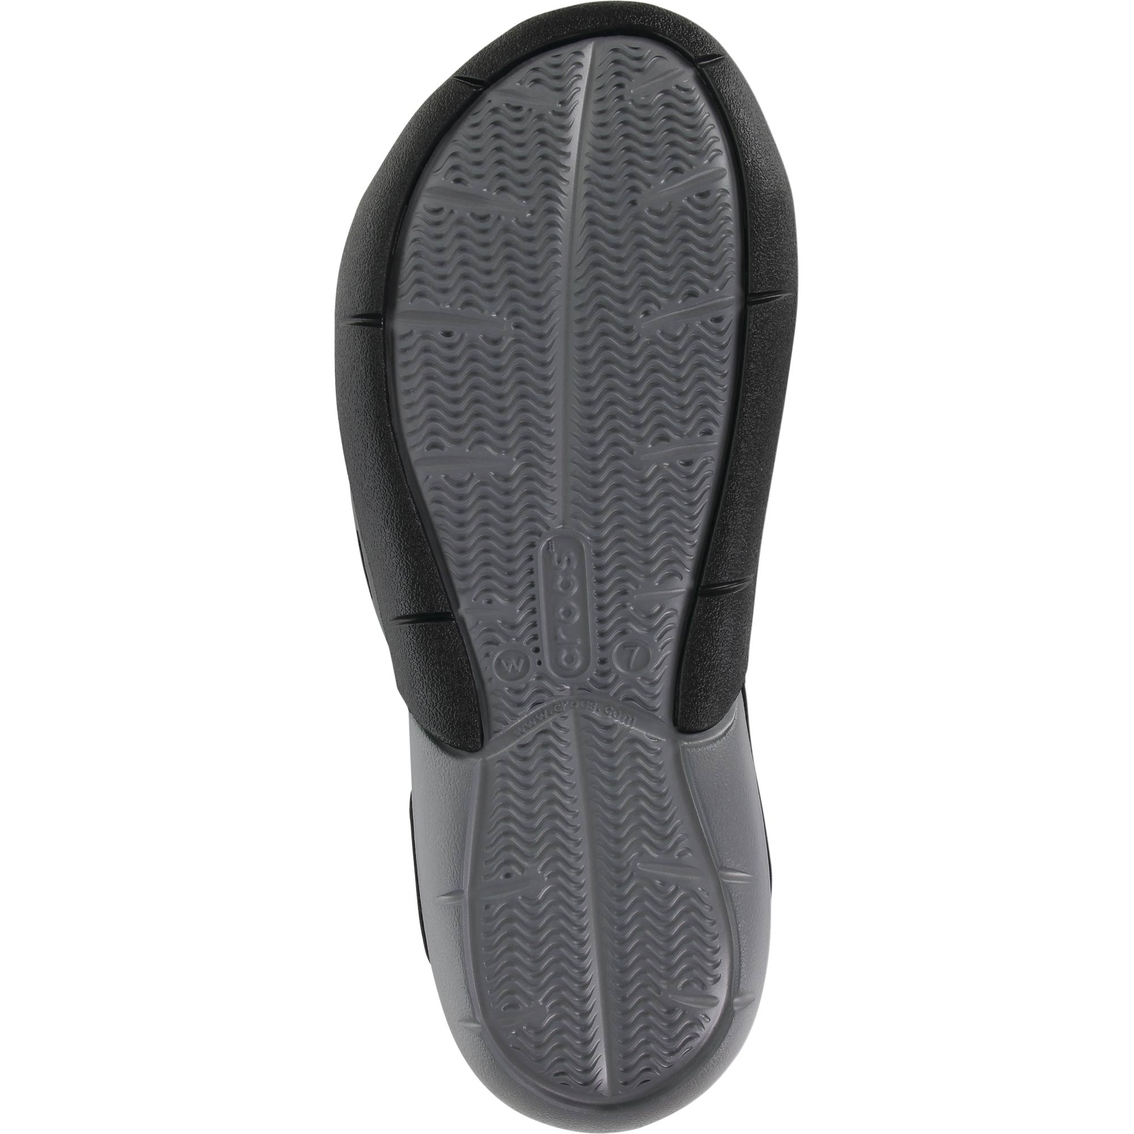 Crocs Women's Swiftwater Mesh  Sandals - Image 4 of 4